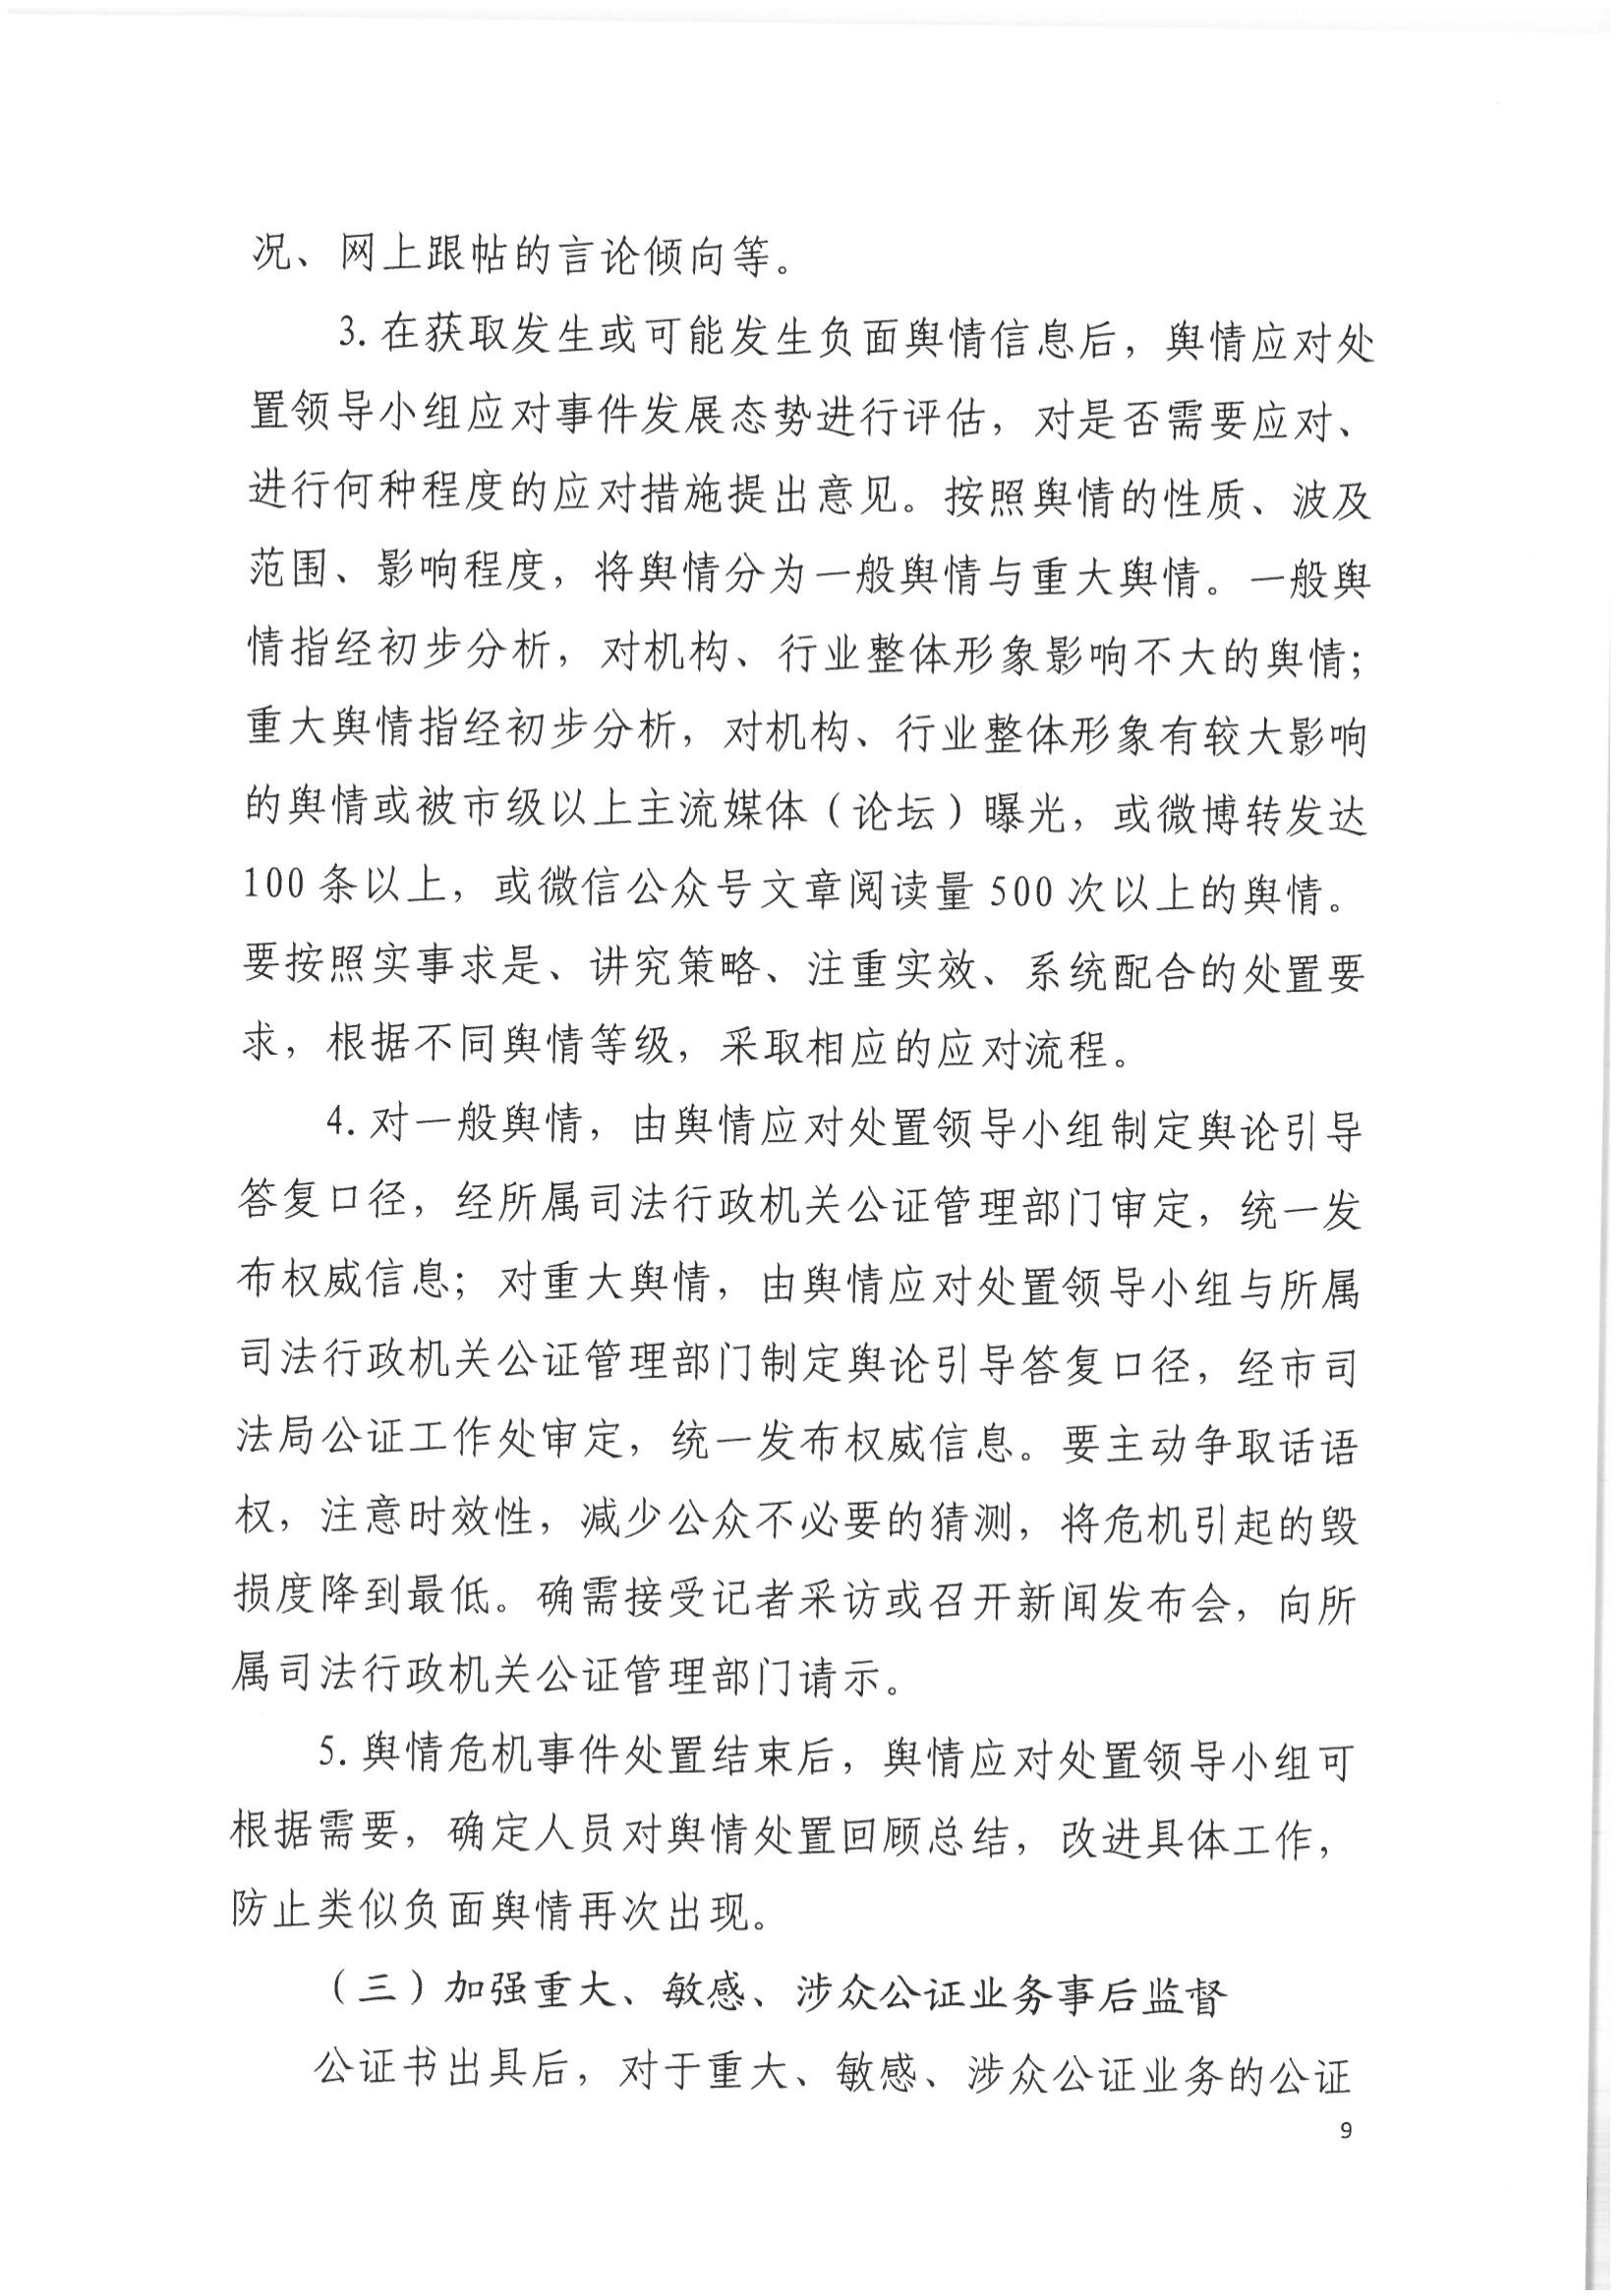 2北京市公证协会关于印发《北京市公证协会关于办理重大、敏感、涉众公证业务的工作指引》的通知(1)_08